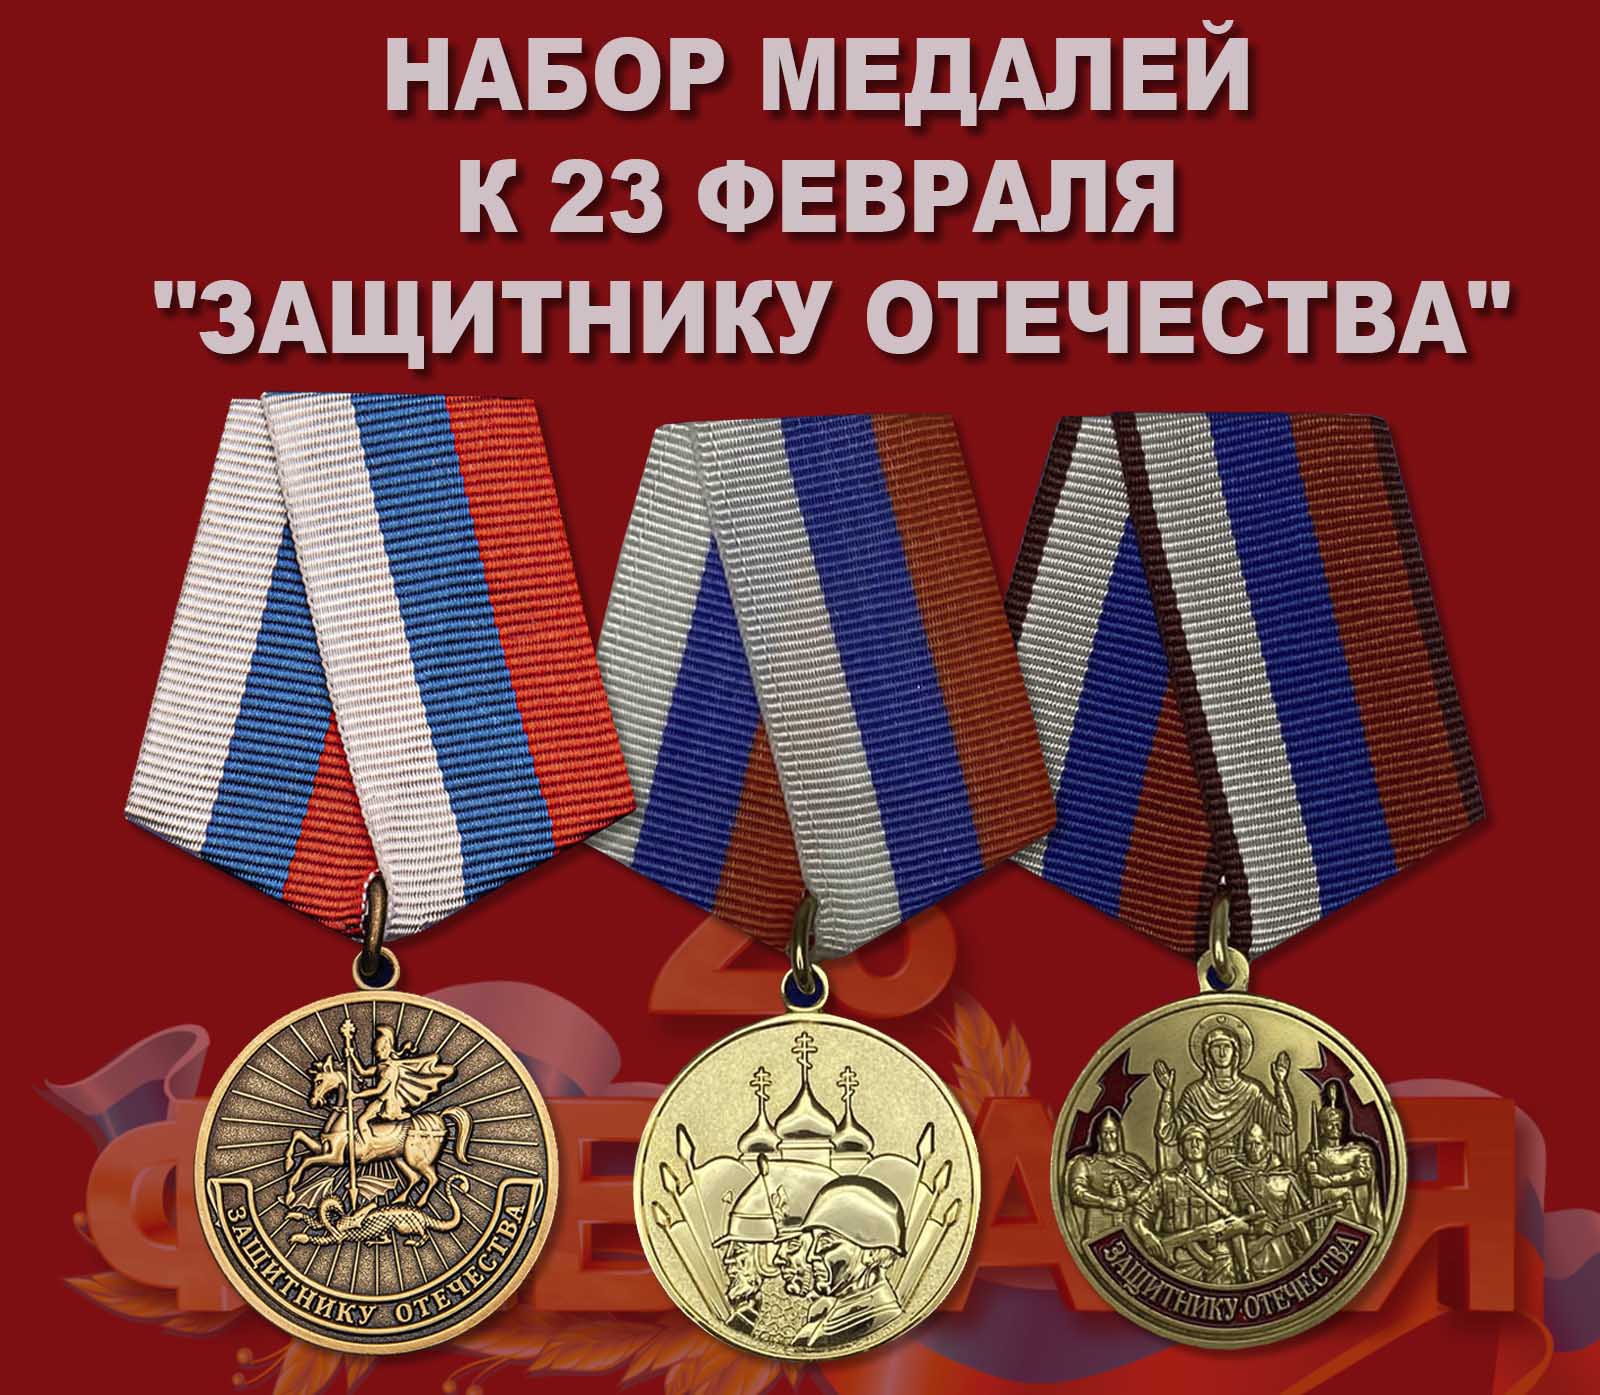 Купить набор медалей к 23 февраля "Защитнику Отечества"